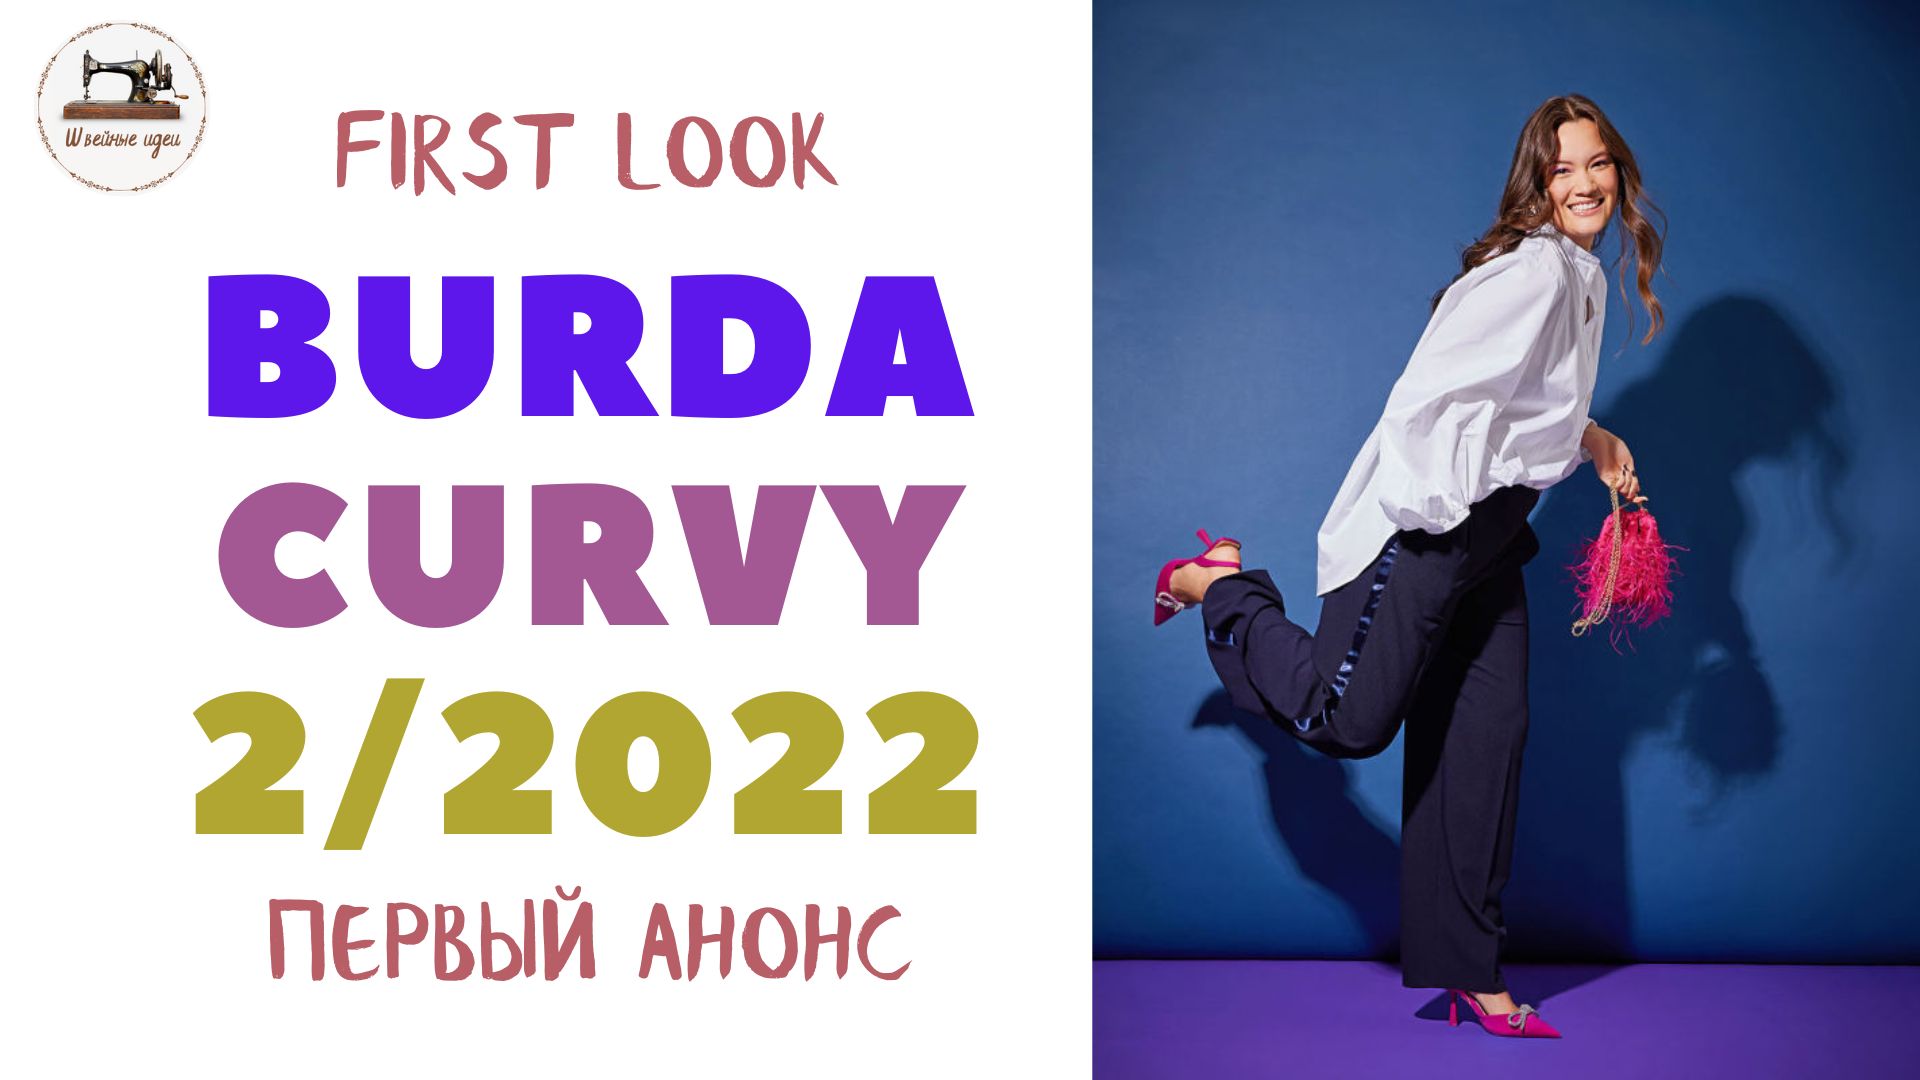 First look Burda CURVY 2/ 2022. Анонс журнала Burda Мода для полных